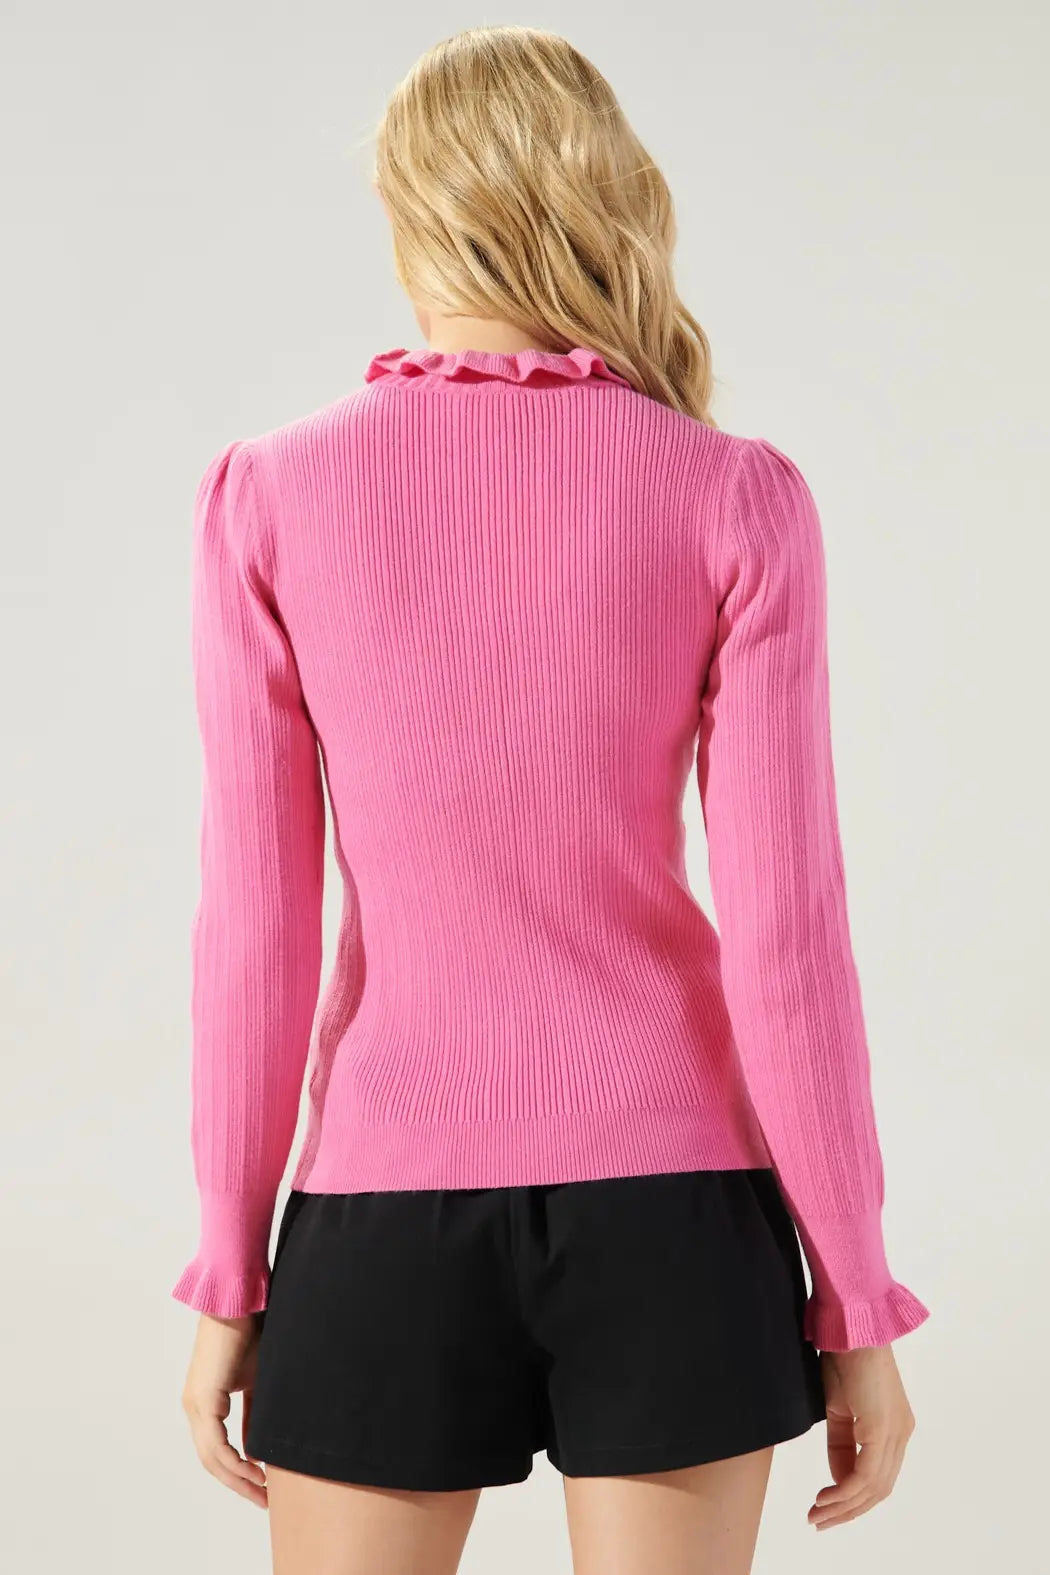 Bubble Gum Pink knit top